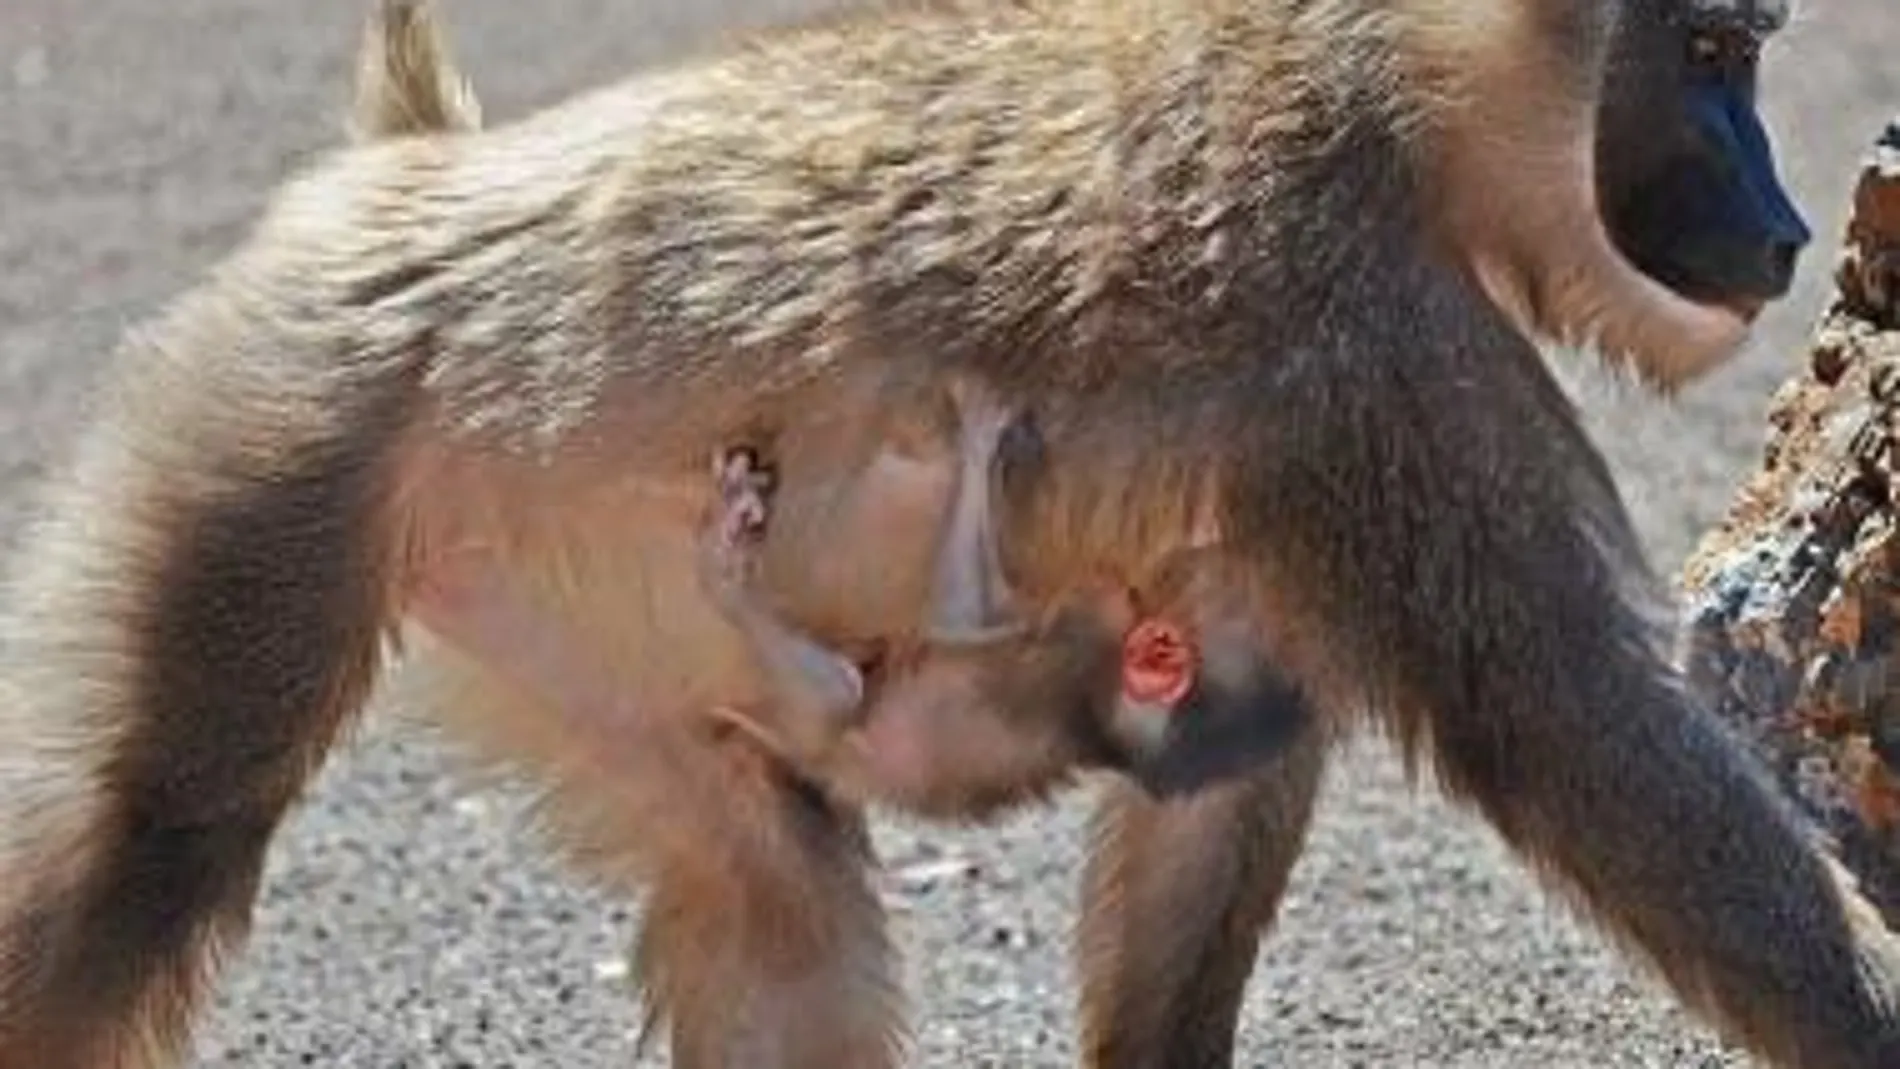 Nace en Bioparc una cría de dril, uno de los primates más amenazados del mundo